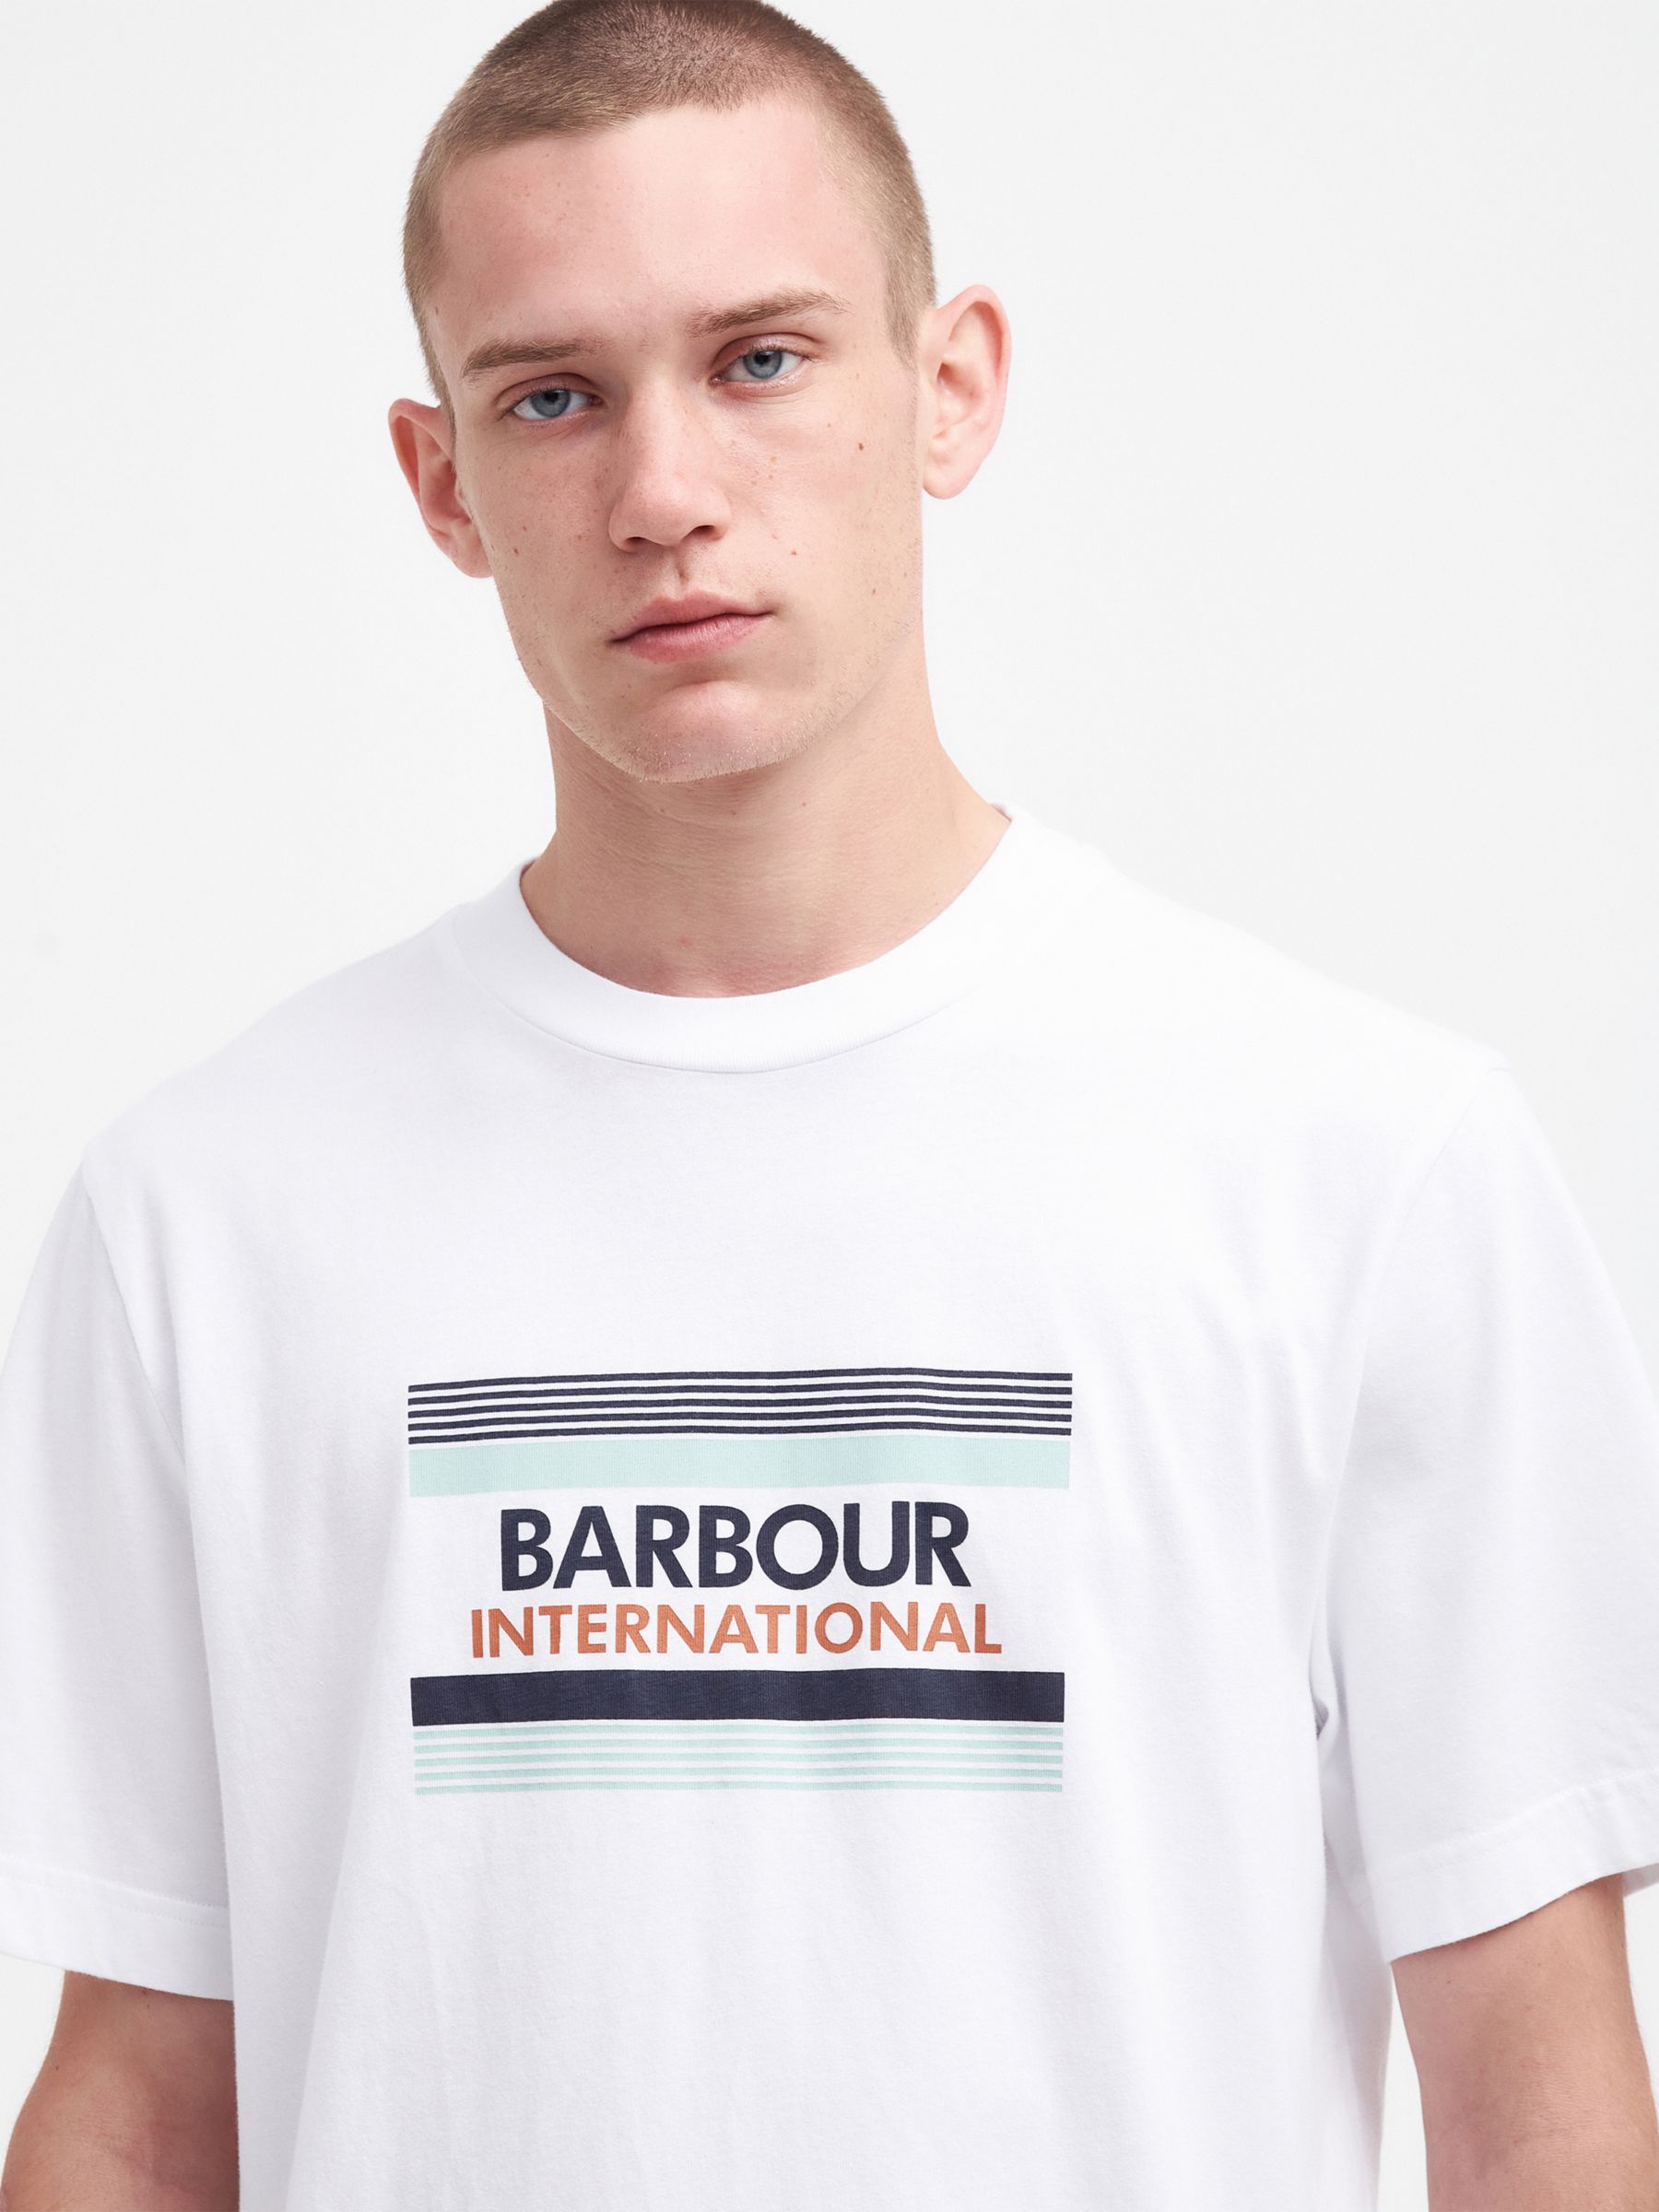 Barbour International Radley T-Shirt, White, S